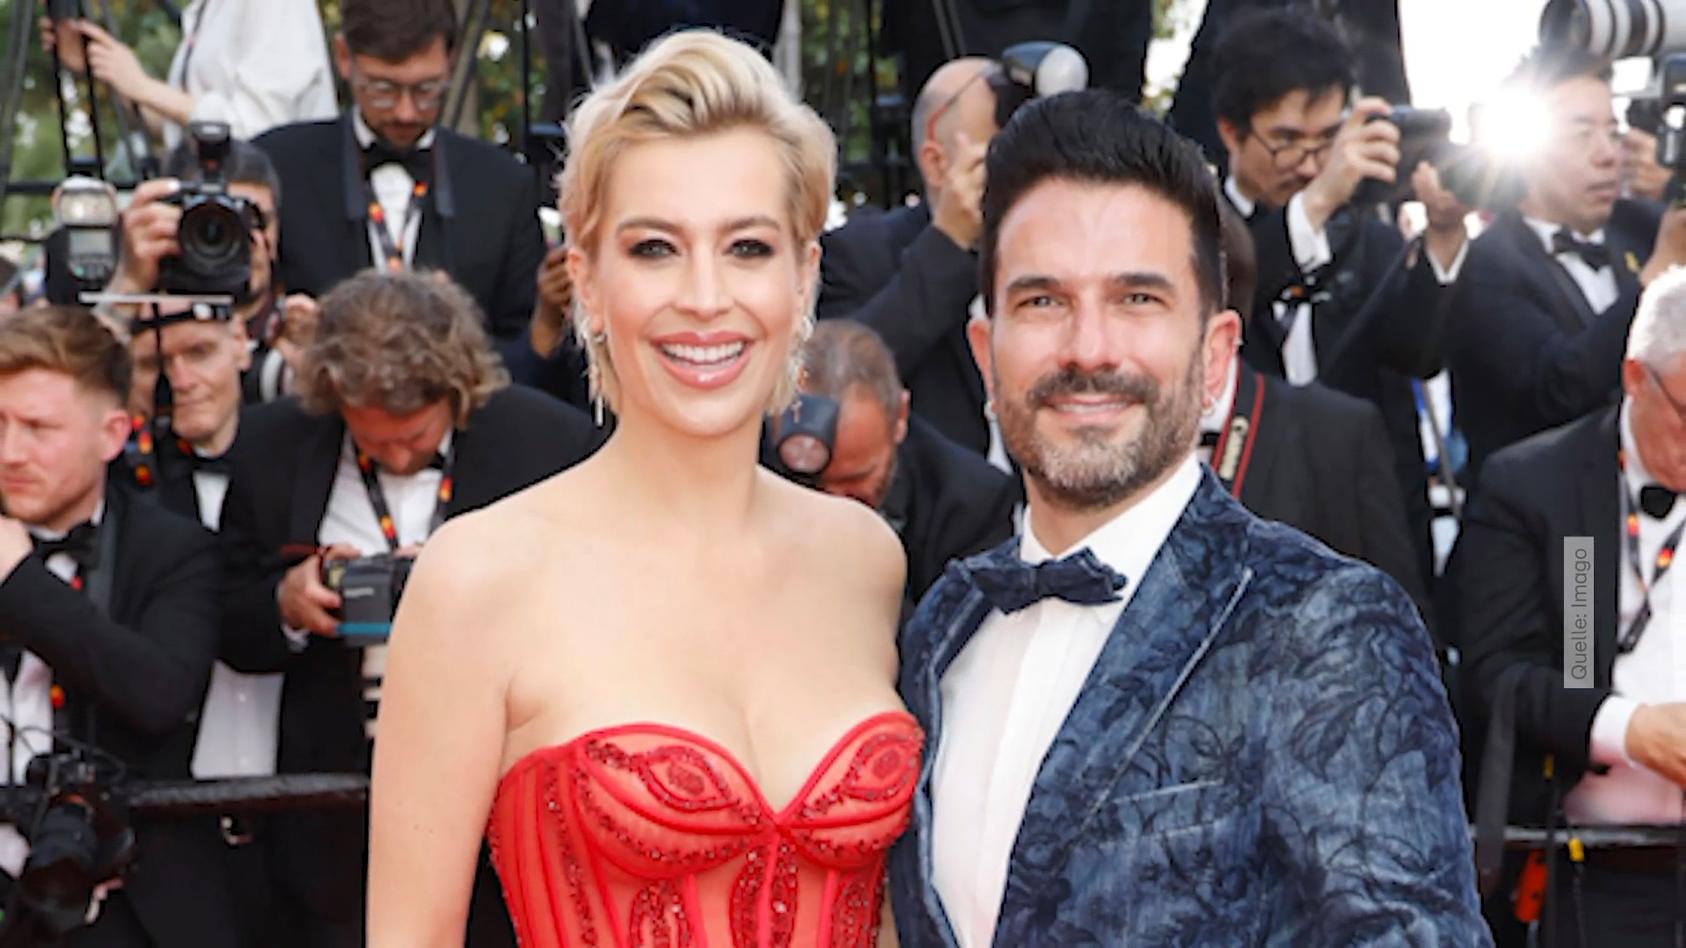 Verena mit Marc Terenzi auf dem roten Teppich in Cannes Sind die hier nicht verKEHRT?